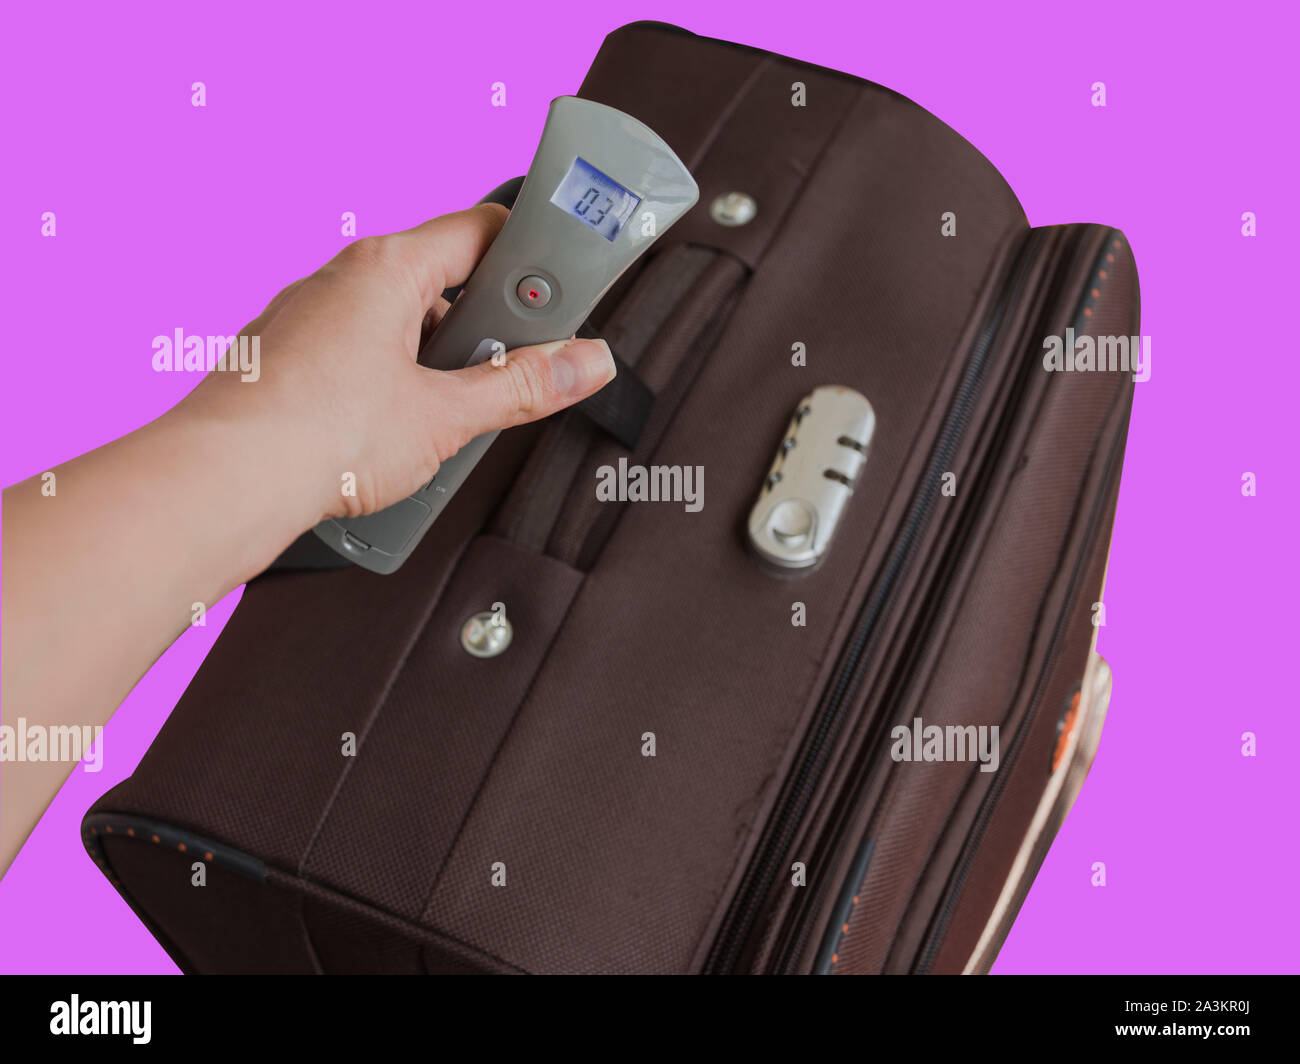 https://c8.alamy.com/compes/2a3kr0j/mano-de-mujer-sosteniendo-el-equipaje-digital-escalas-evite-el-exceso-de-equipaje-en-el-aeropuerto-concepto-equipaje-de-bolsillo-balanzas-digitales-accesorios-de-viaje-2a3kr0j.jpg